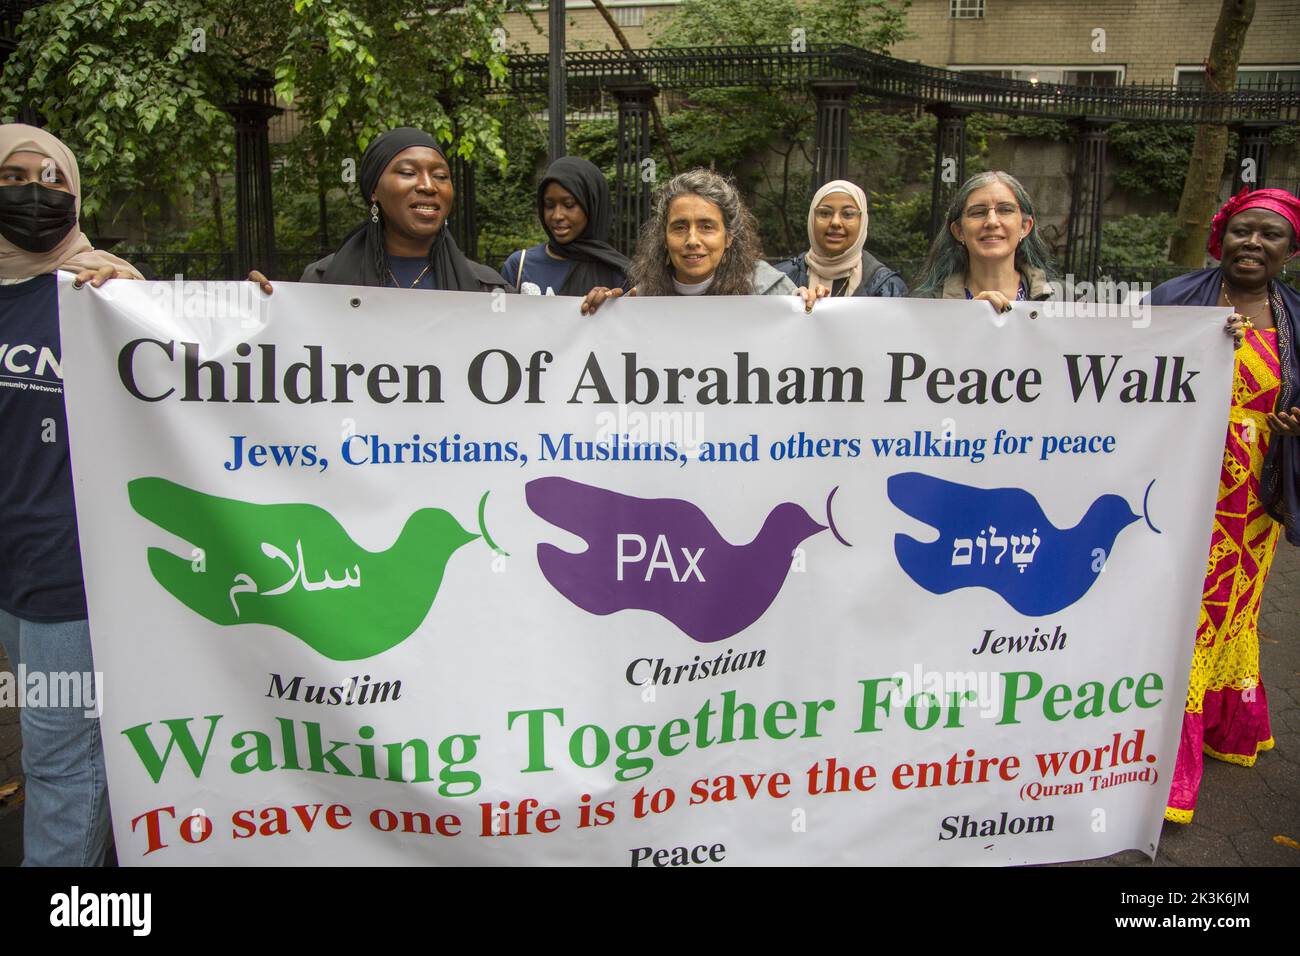 Les membres de divers groupes religieux et religions se réunissent par l'Organisation des Nations Unies pour la Marche annuelle de la paix des enfants d'Abraham à New York. Banque D'Images